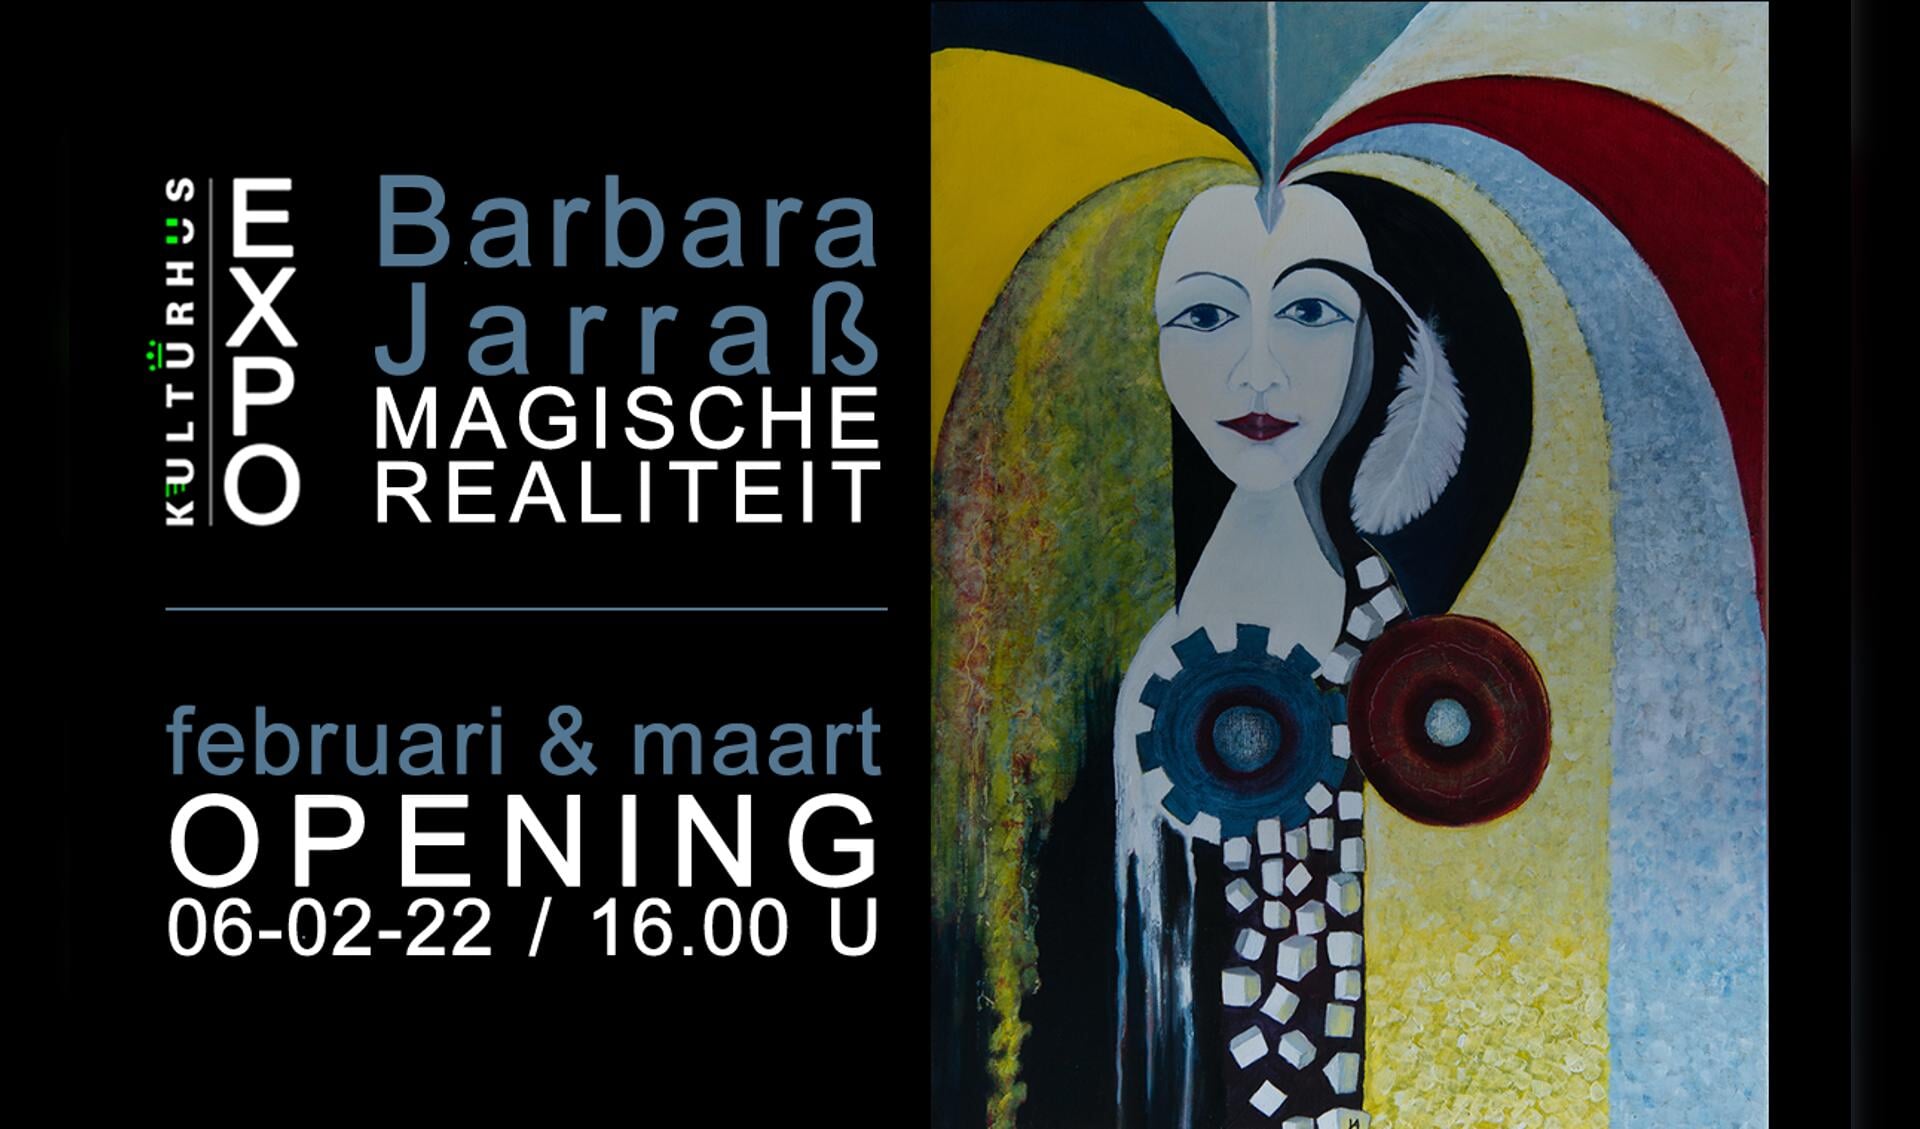 Barbara Jarrass exposeert in Het Kulturhus